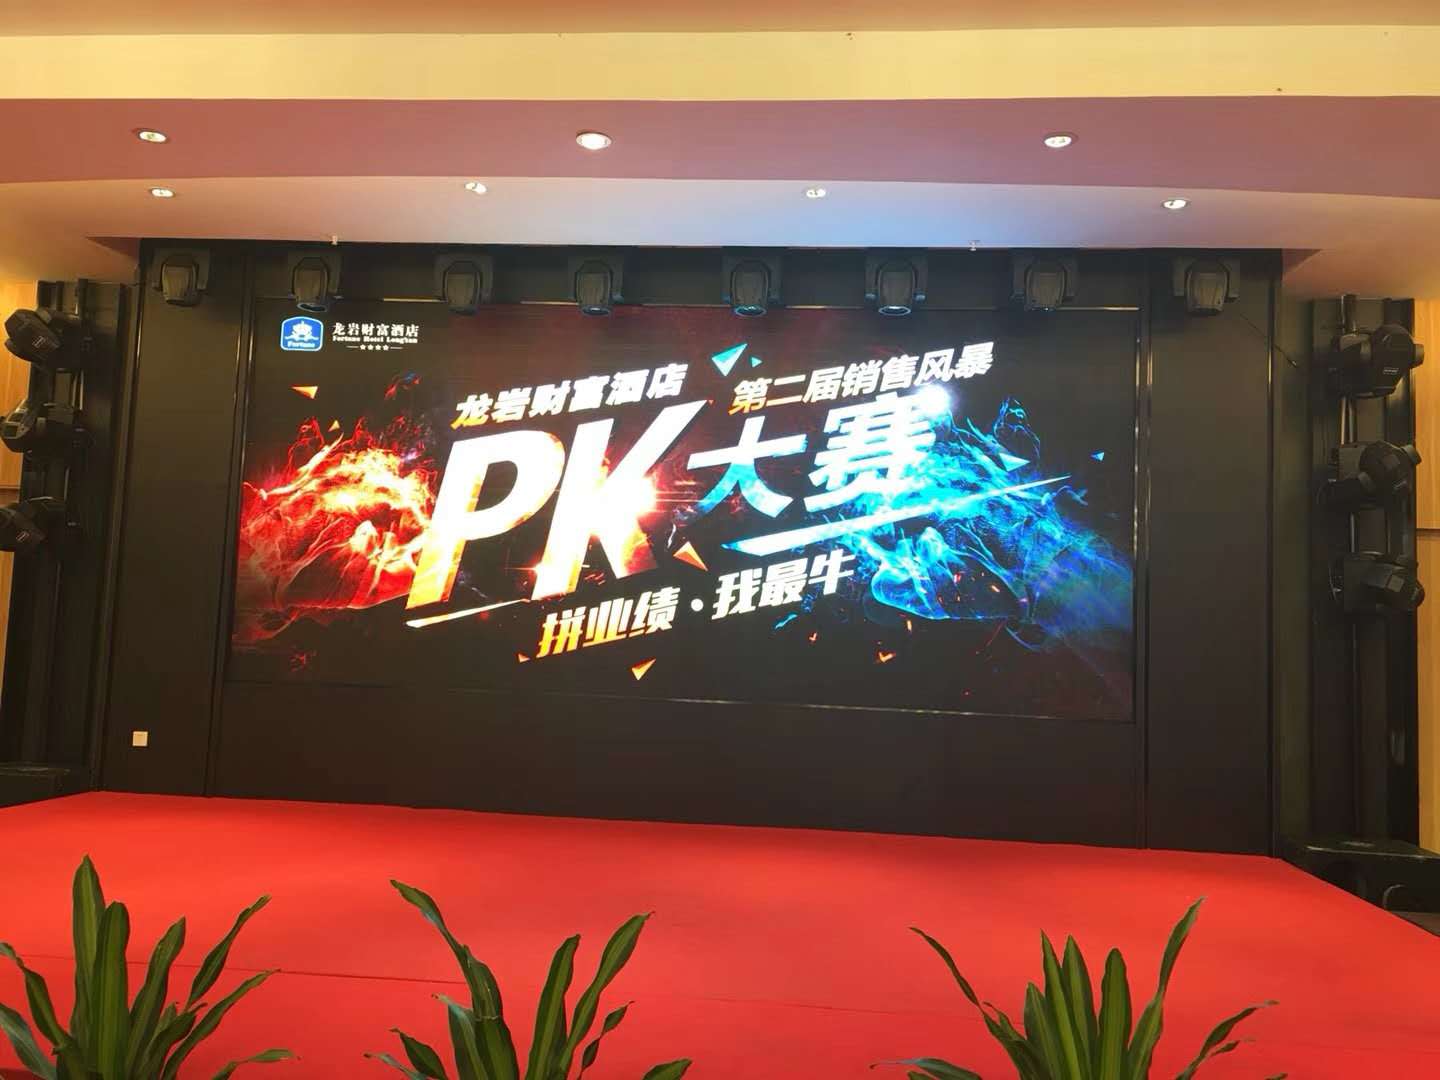 龍巖財富酒店第二屆銷售風暴PK大賽 2